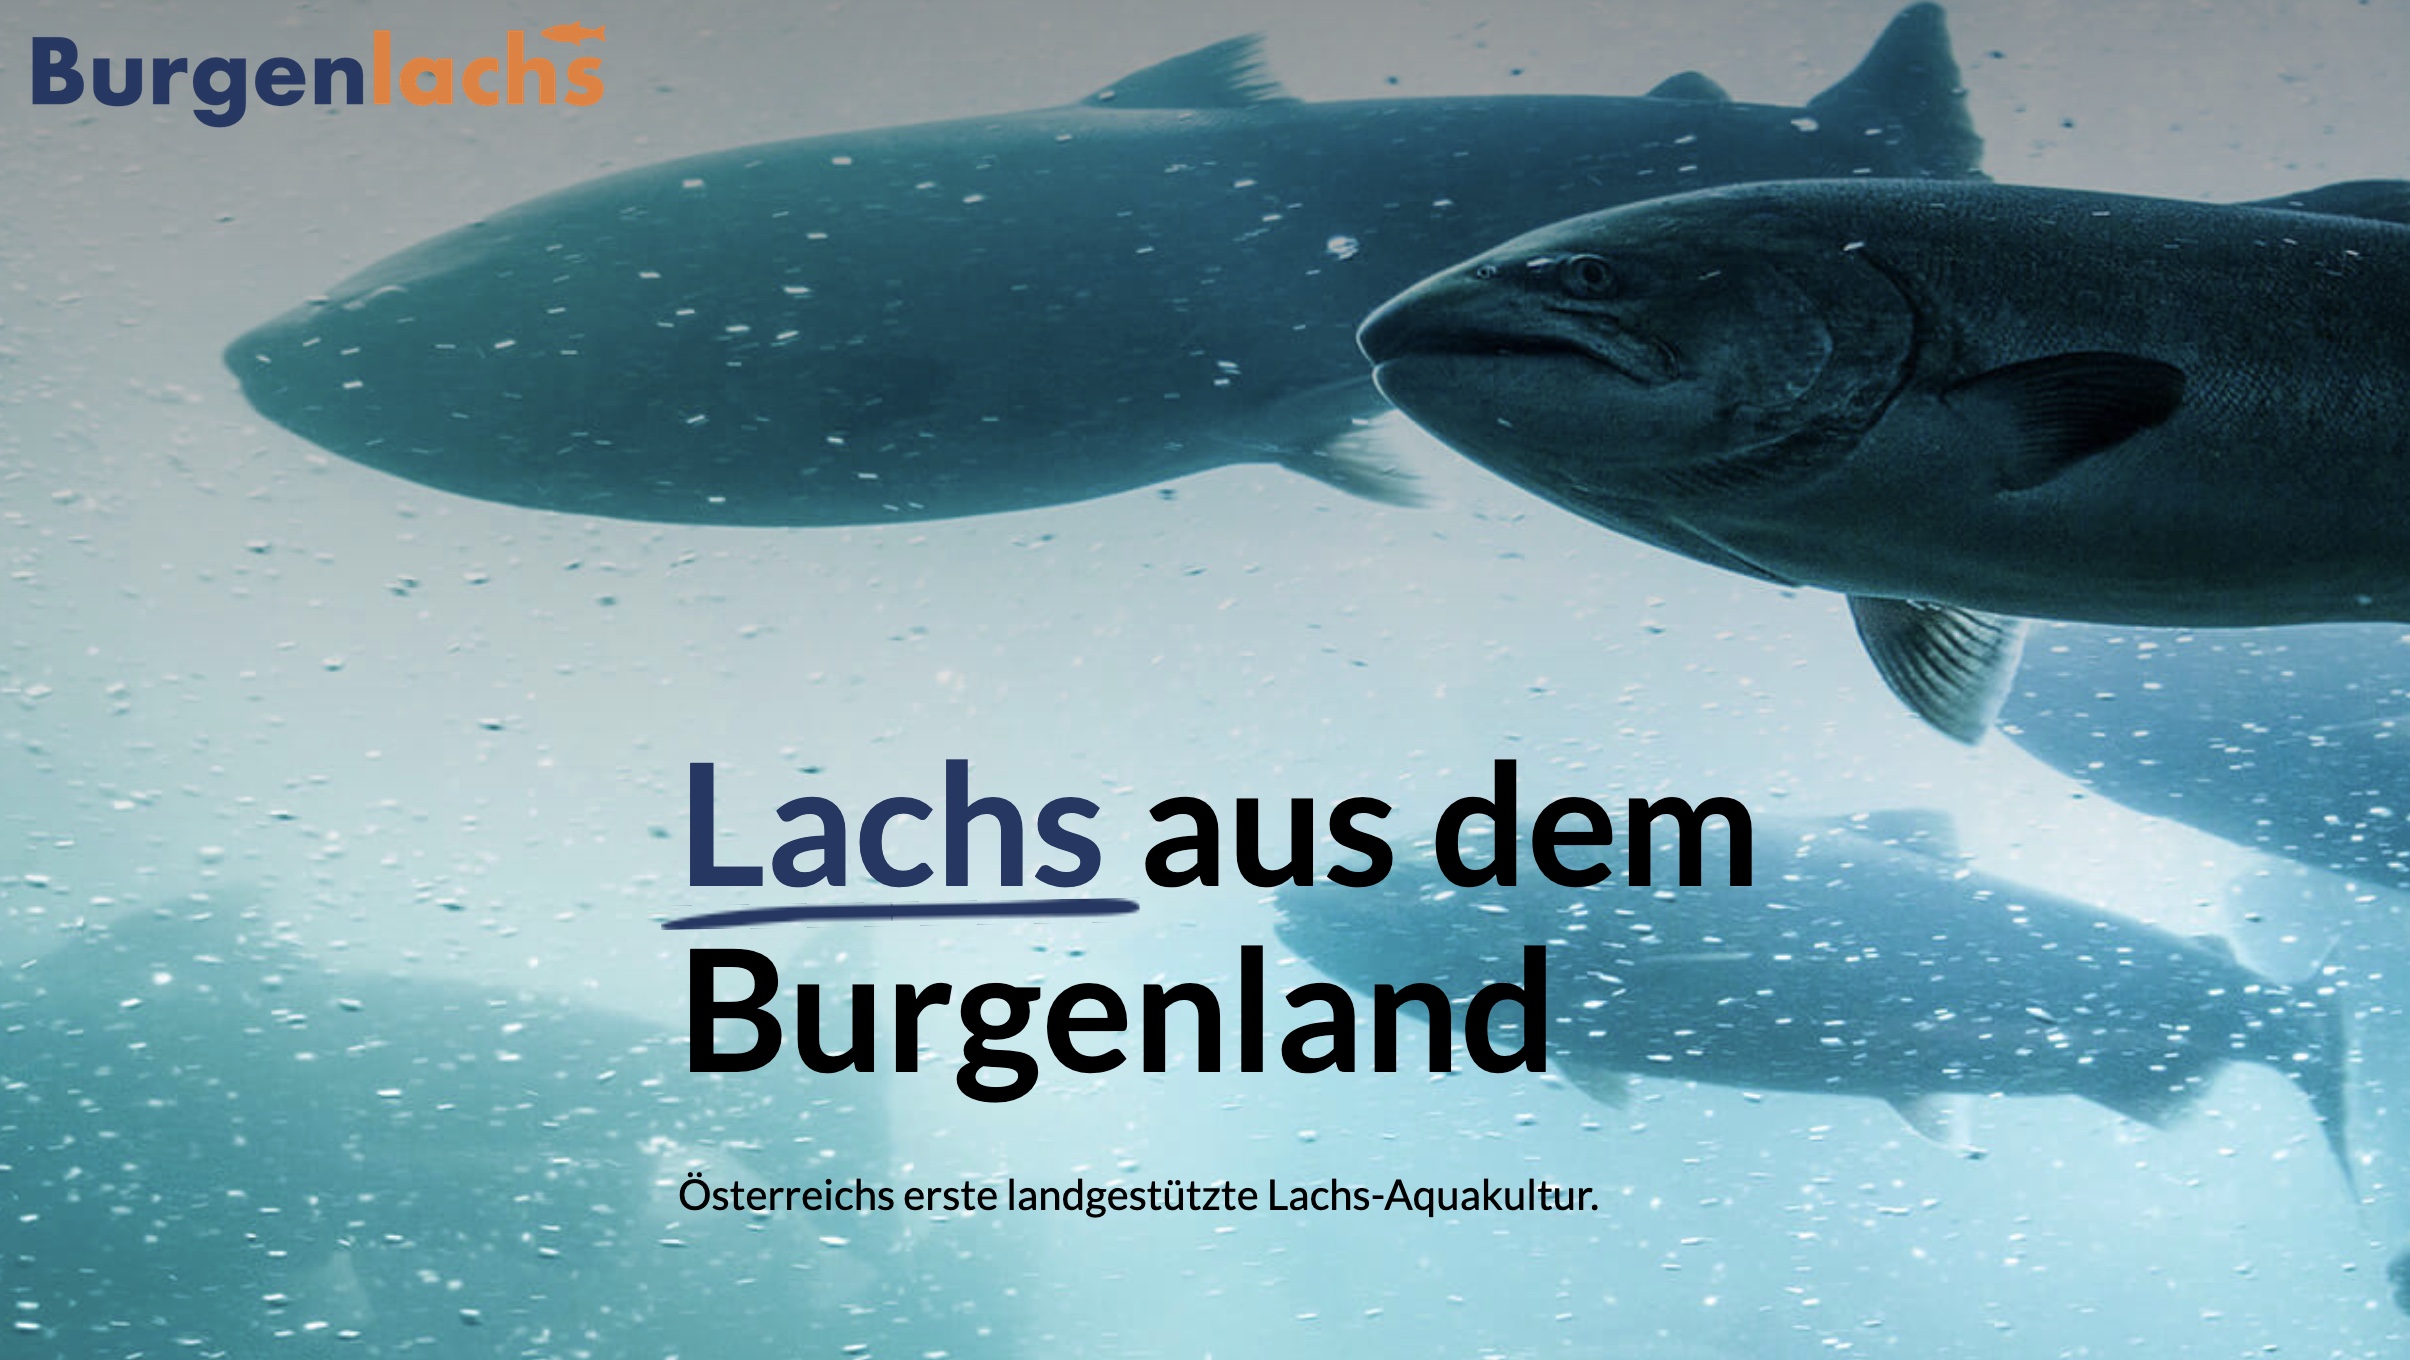 Österreich: Landgestützte Lachszucht geplant